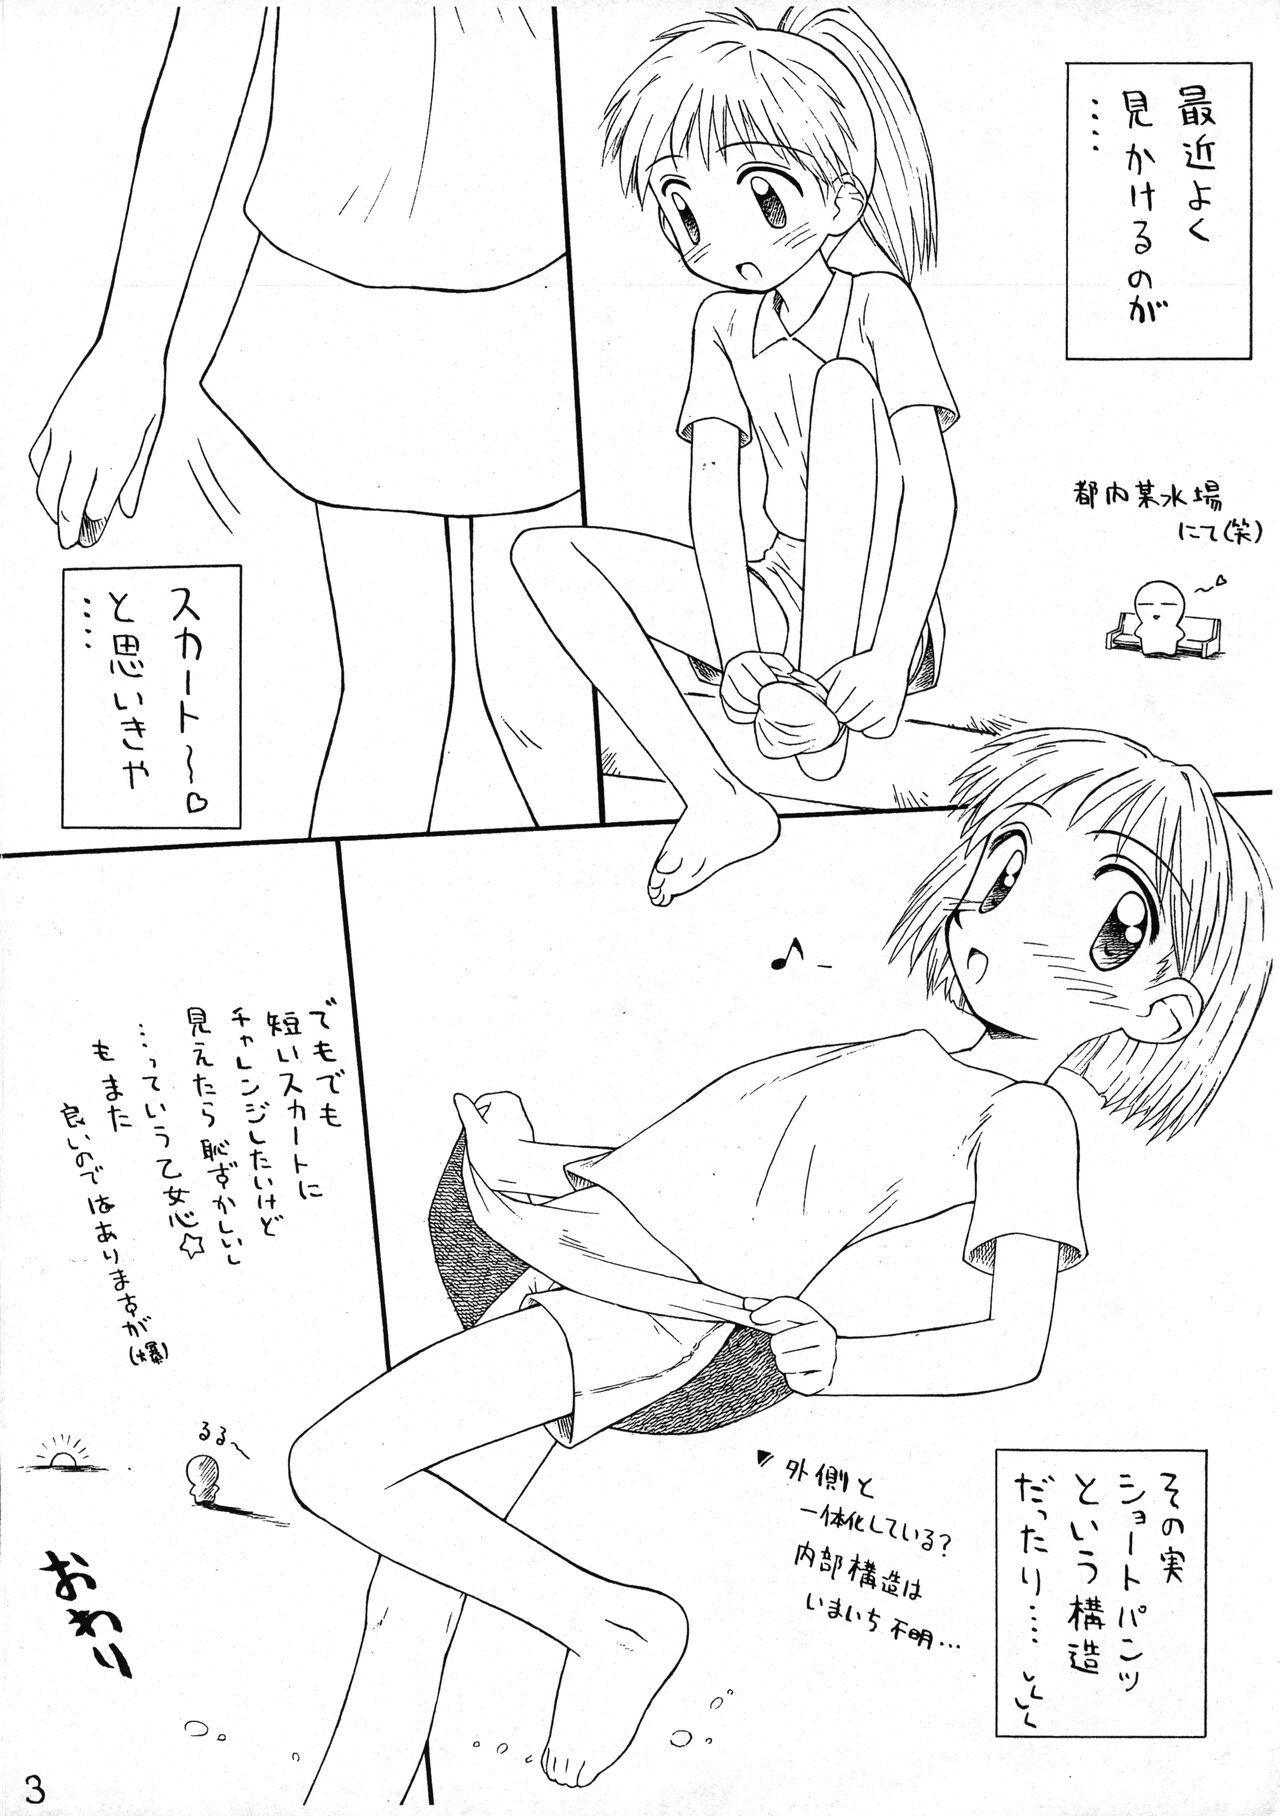 Amatur Porn Rakugaki File 3 - Cardcaptor sakura Ojamajo doremi | magical doremi Prostitute - Page 3